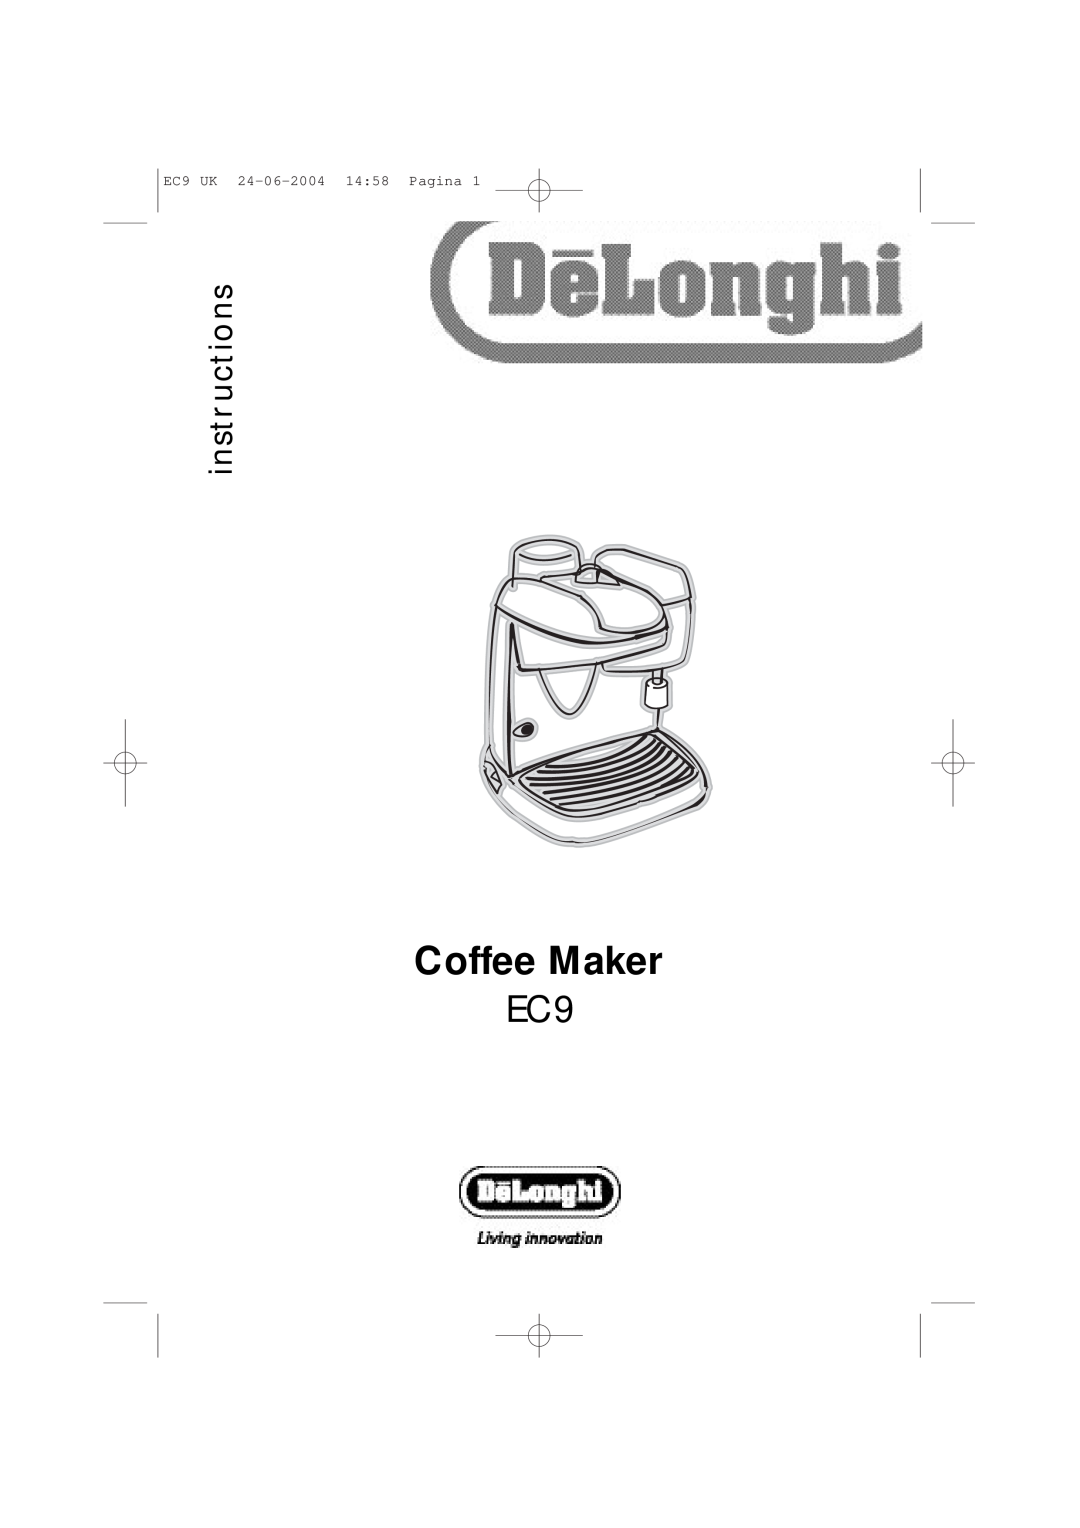 DeLonghi manual Coffee Maker, instr uctions, EC9 UK 24-06-2004 1458 Pagina 